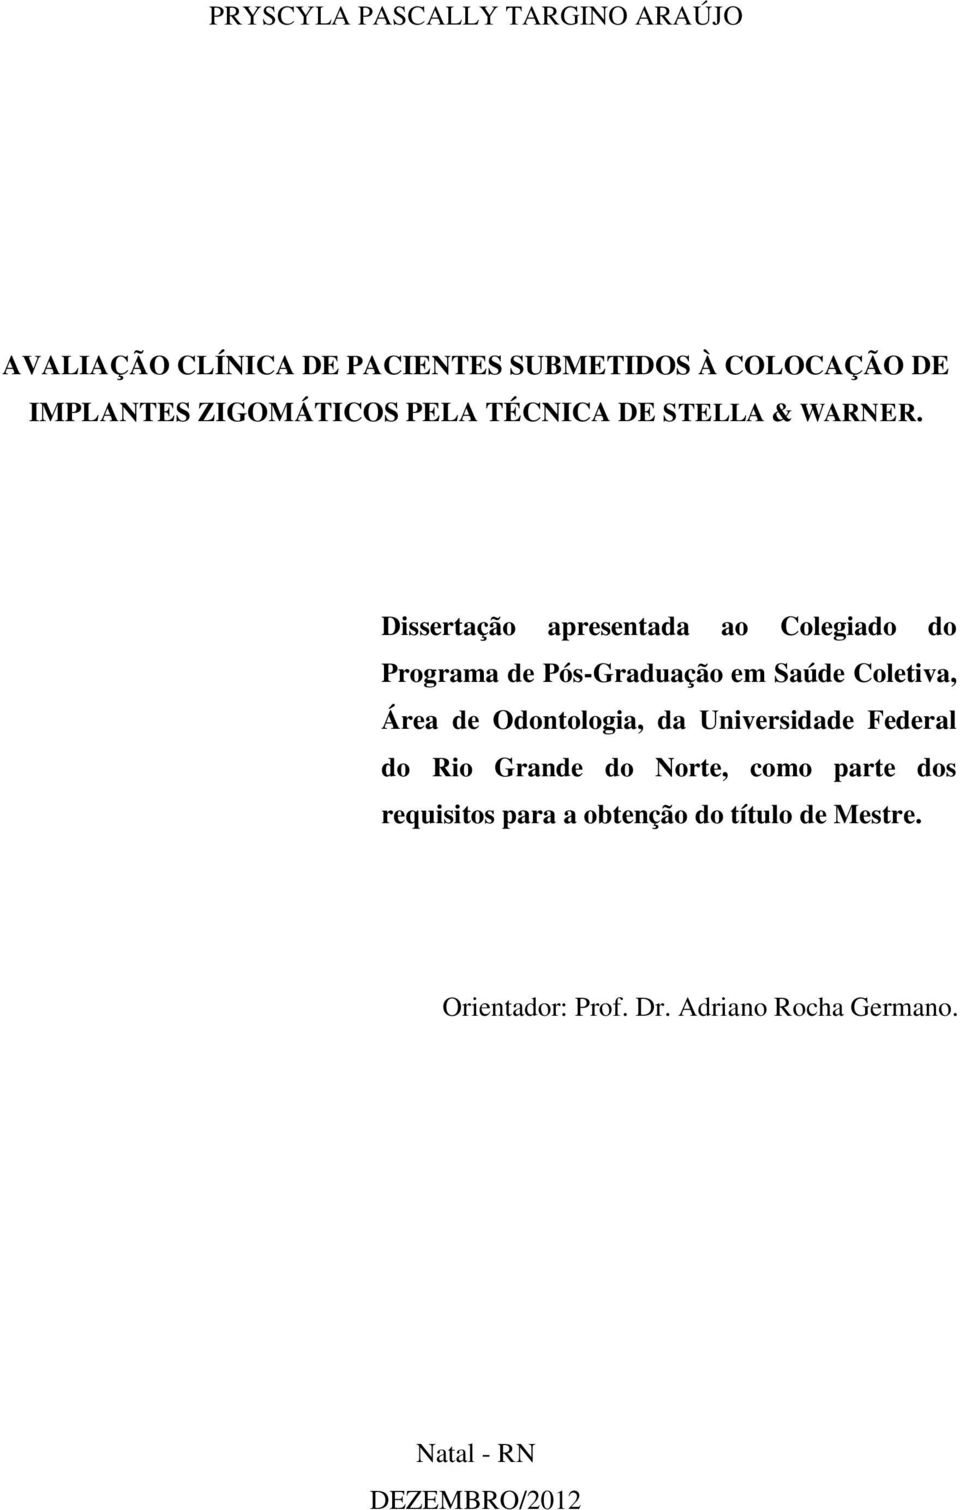 Dissertação apresentada ao Colegiado do Programa de Pós-Graduação em Saúde Coletiva, Área de Odontologia, da